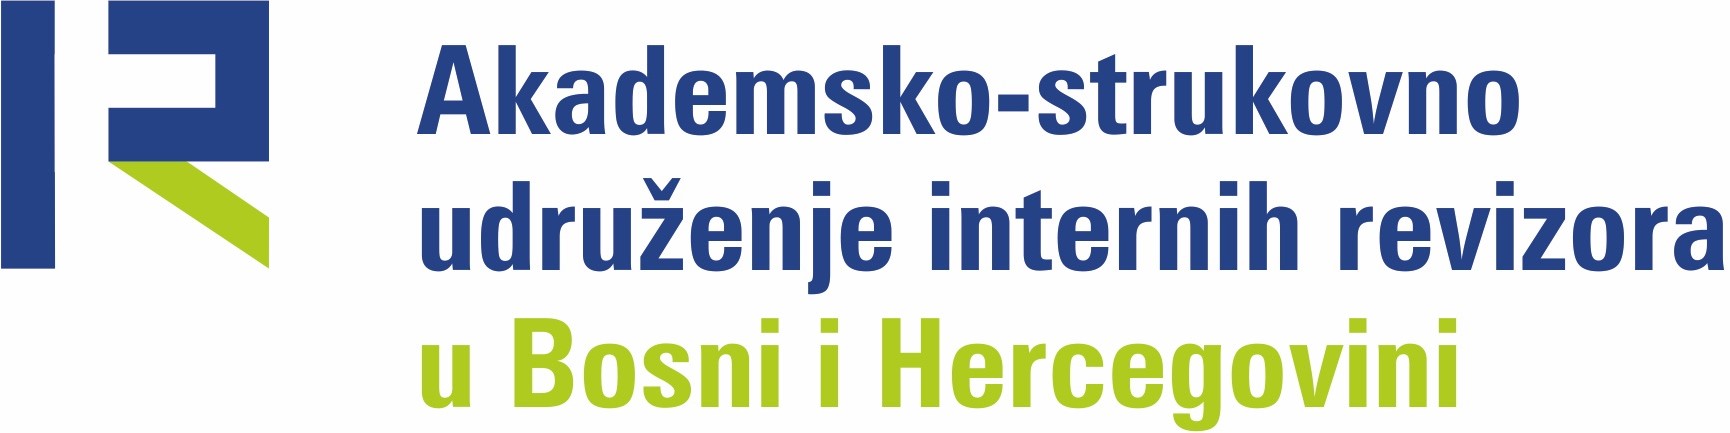 Akademsko-strukovno udruženje internih revizora u Bosni i Hercegovini